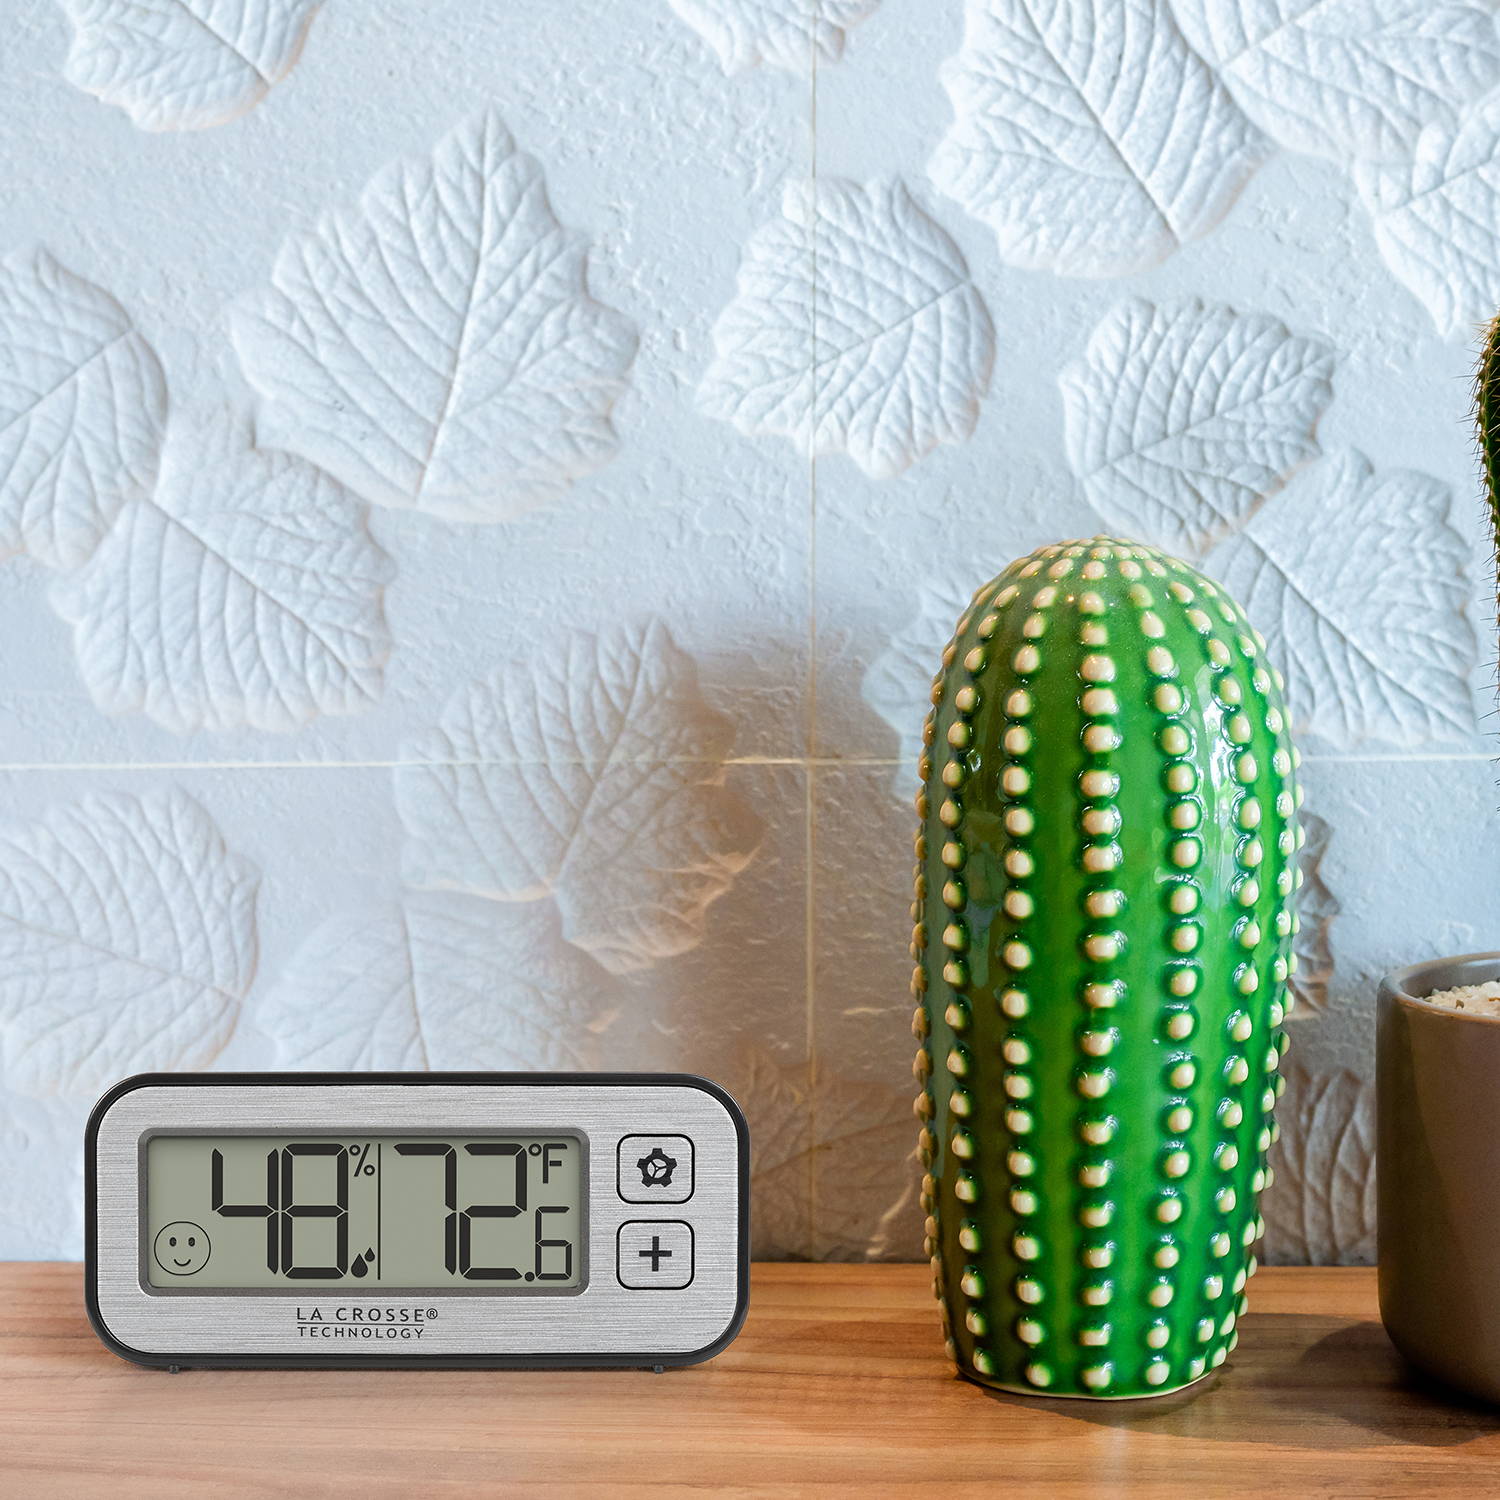 Nini Digital Wall Clock with Comfort Meter